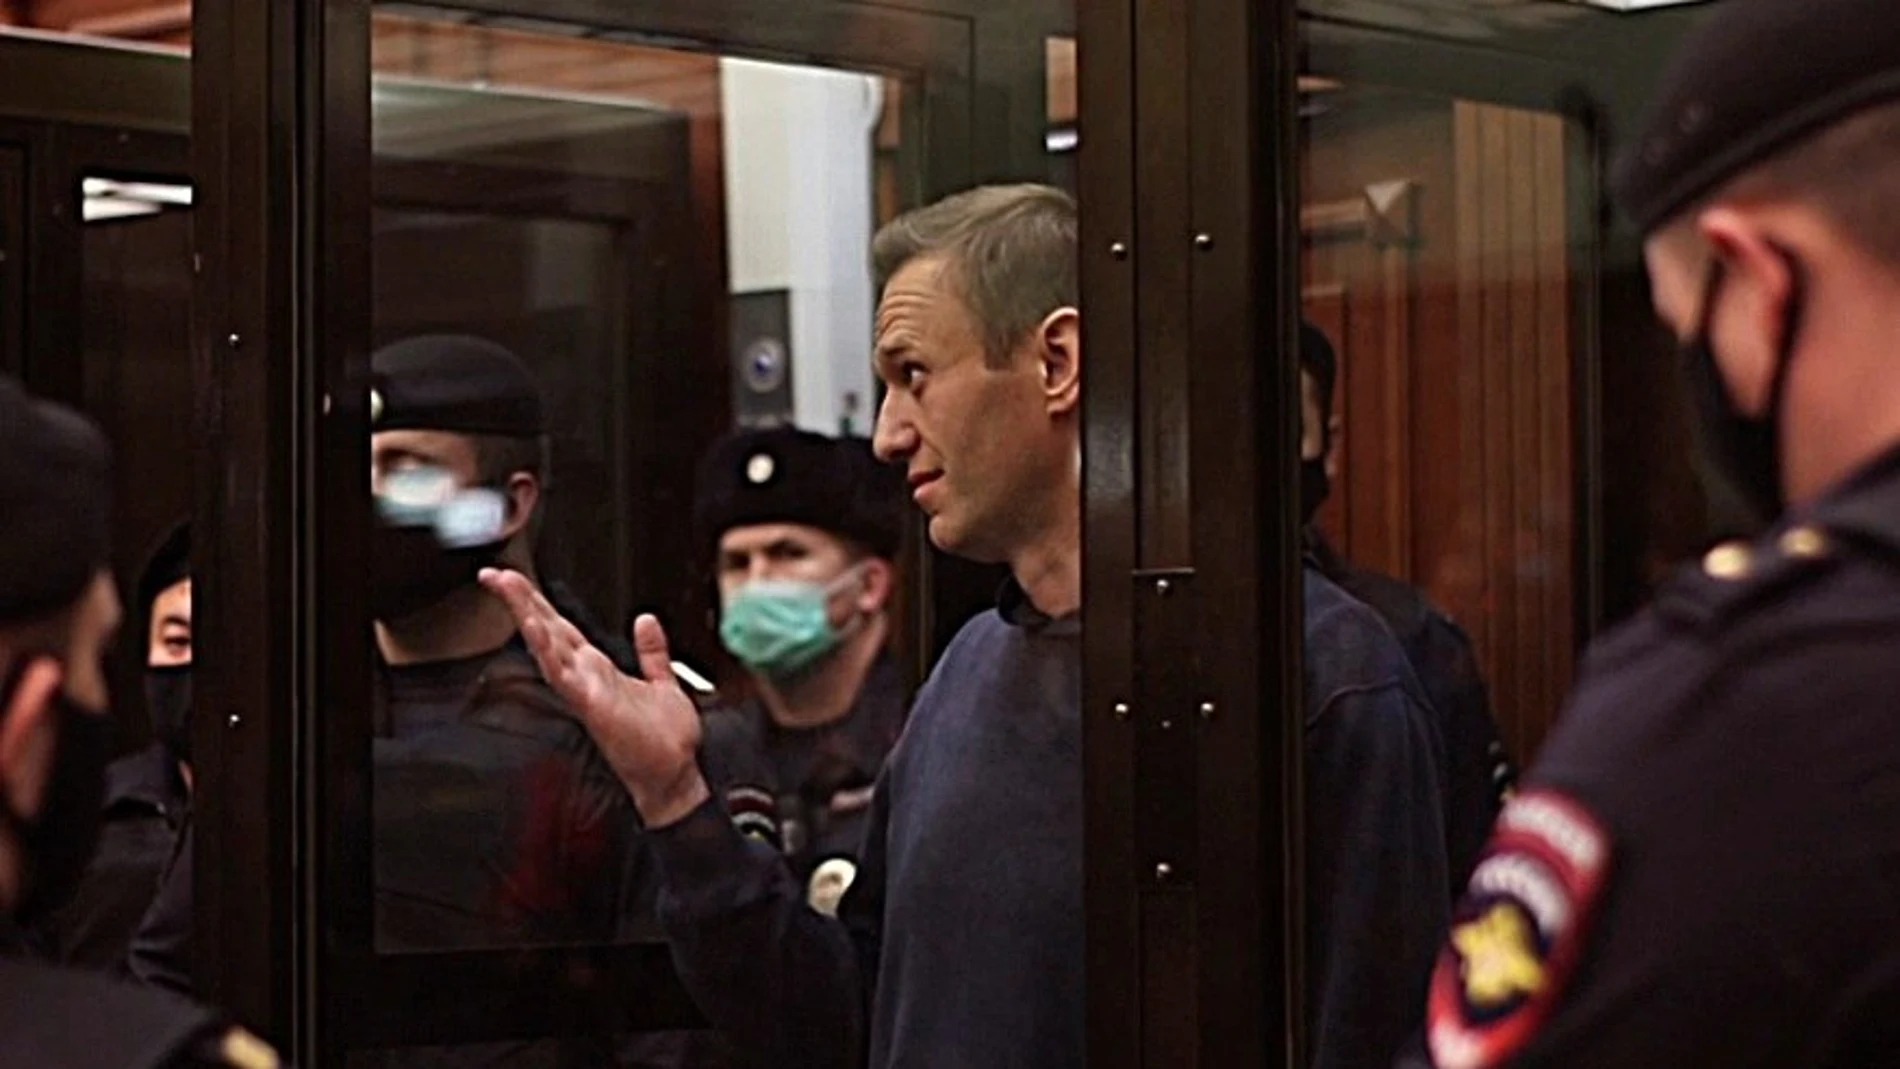 La Justicia rusa condenó al opositor Alexei Navalni a tres años y medio de prisión